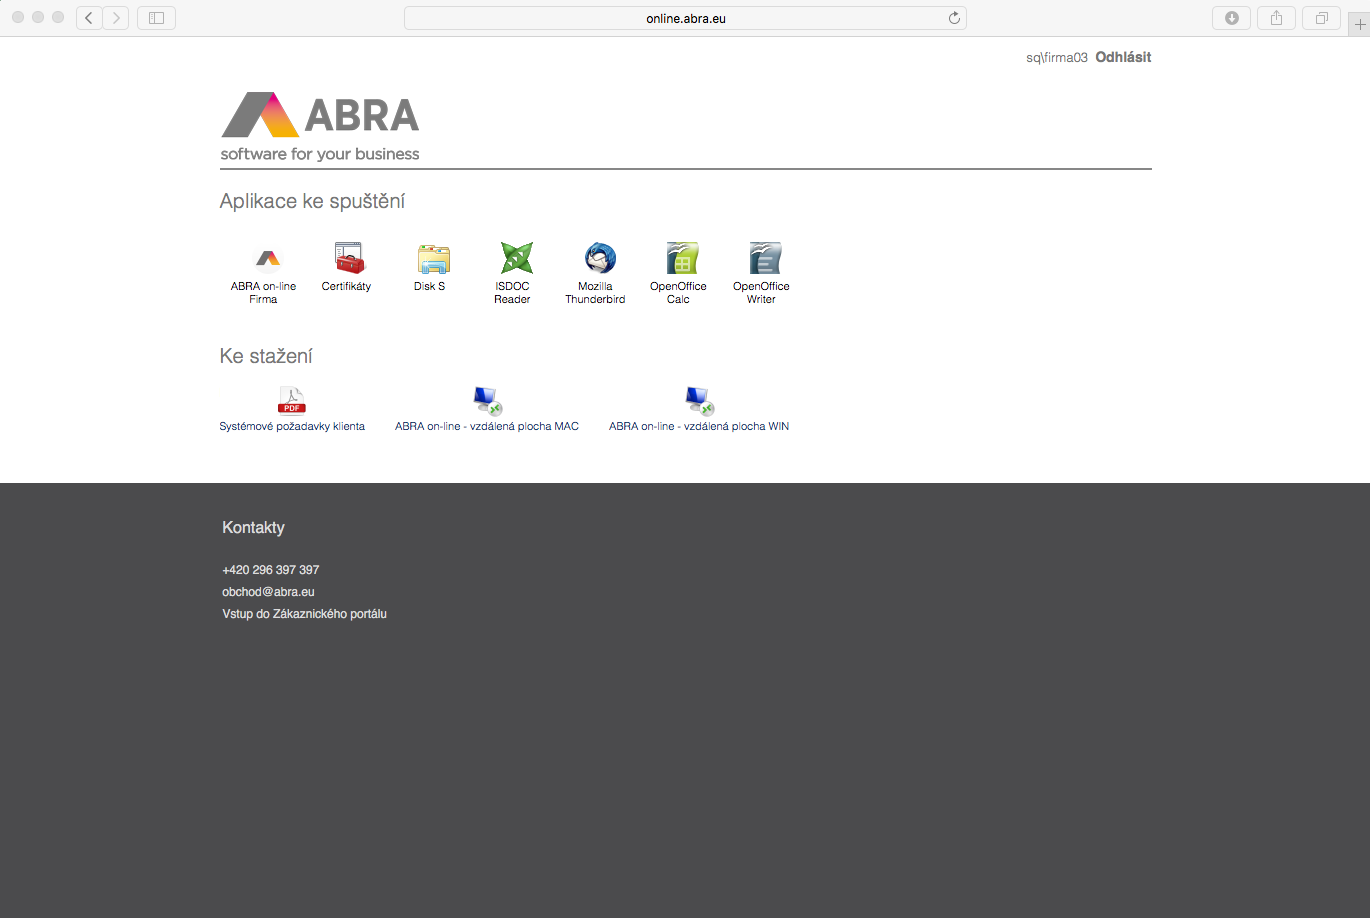 1. Spusťte váš oblíbený internetový prohlížeč a otevřete adresu: online.abra.eu 2.